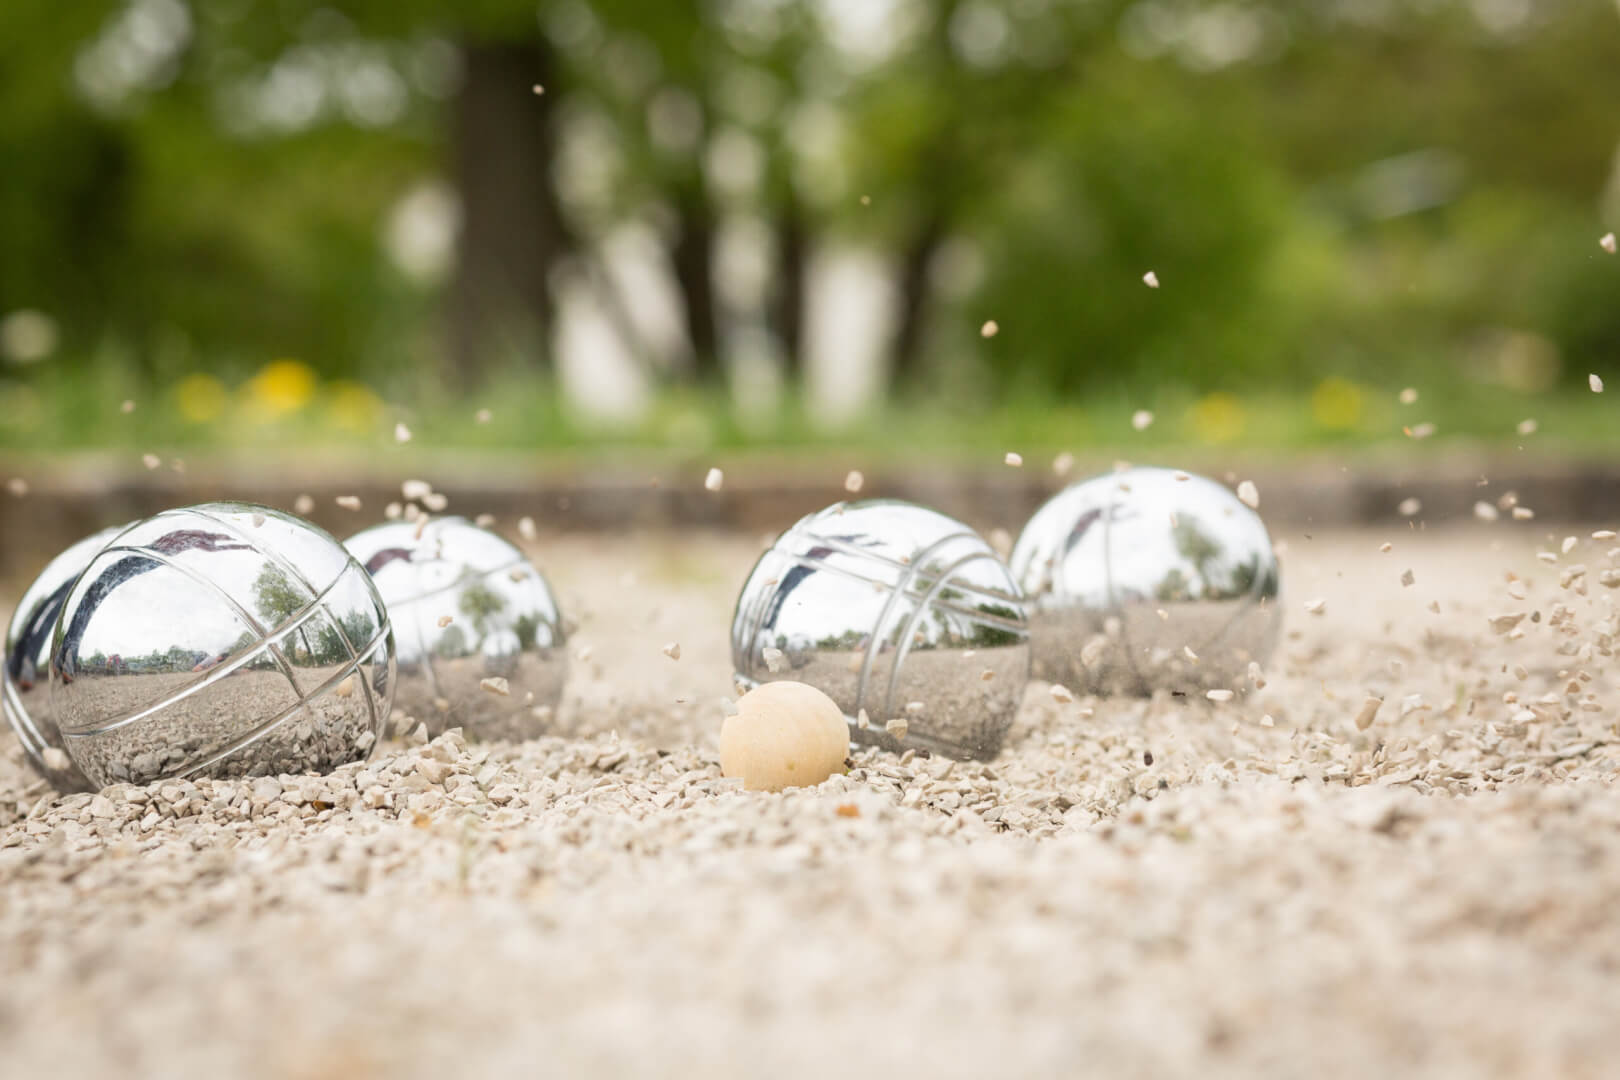 Unas bolas de petanca en un parque.